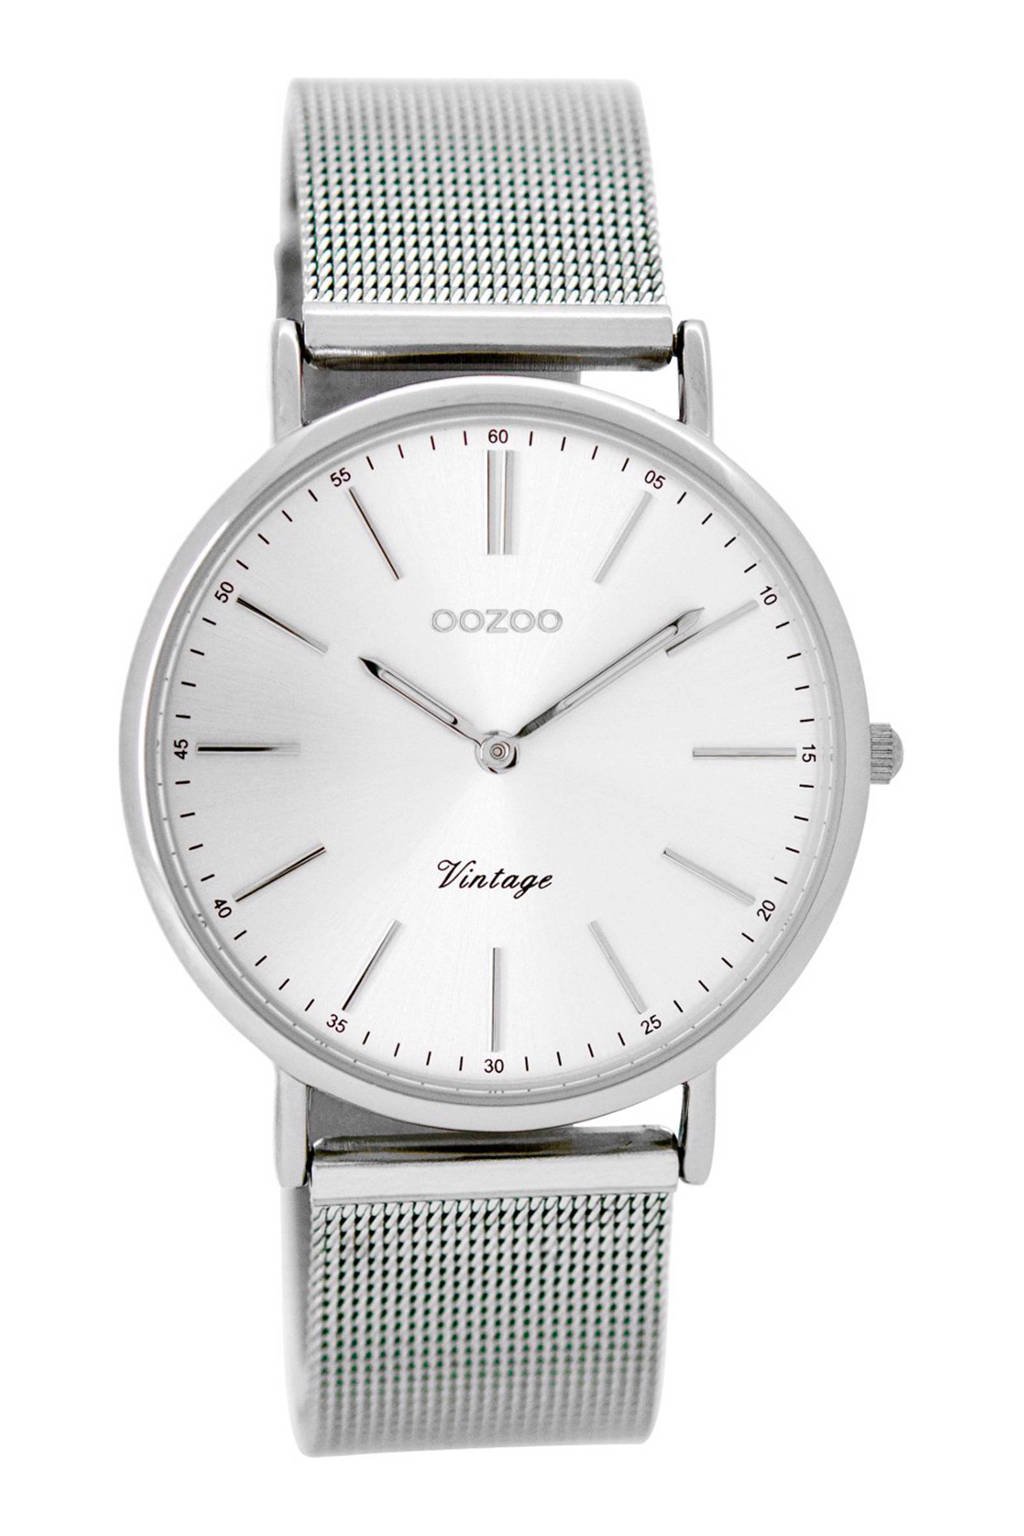 Per ongeluk Scarp Deuk OOZOO Vintage horloge - C8810 | wehkamp